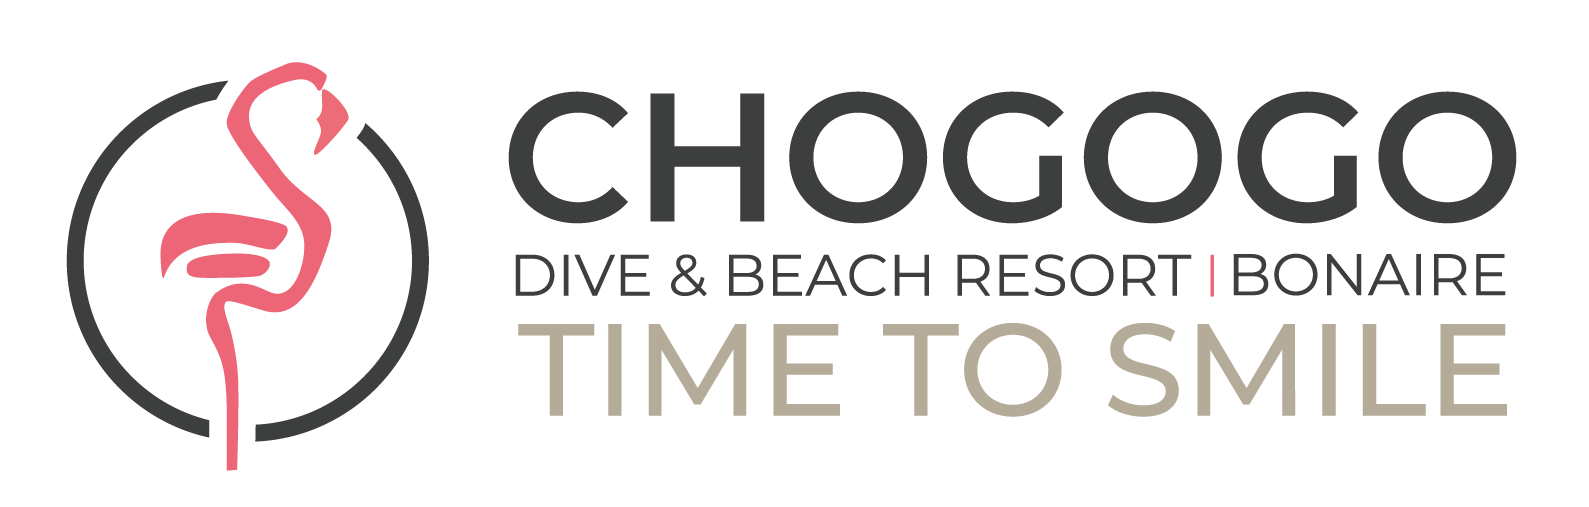 Chogogo Bonaire Logo